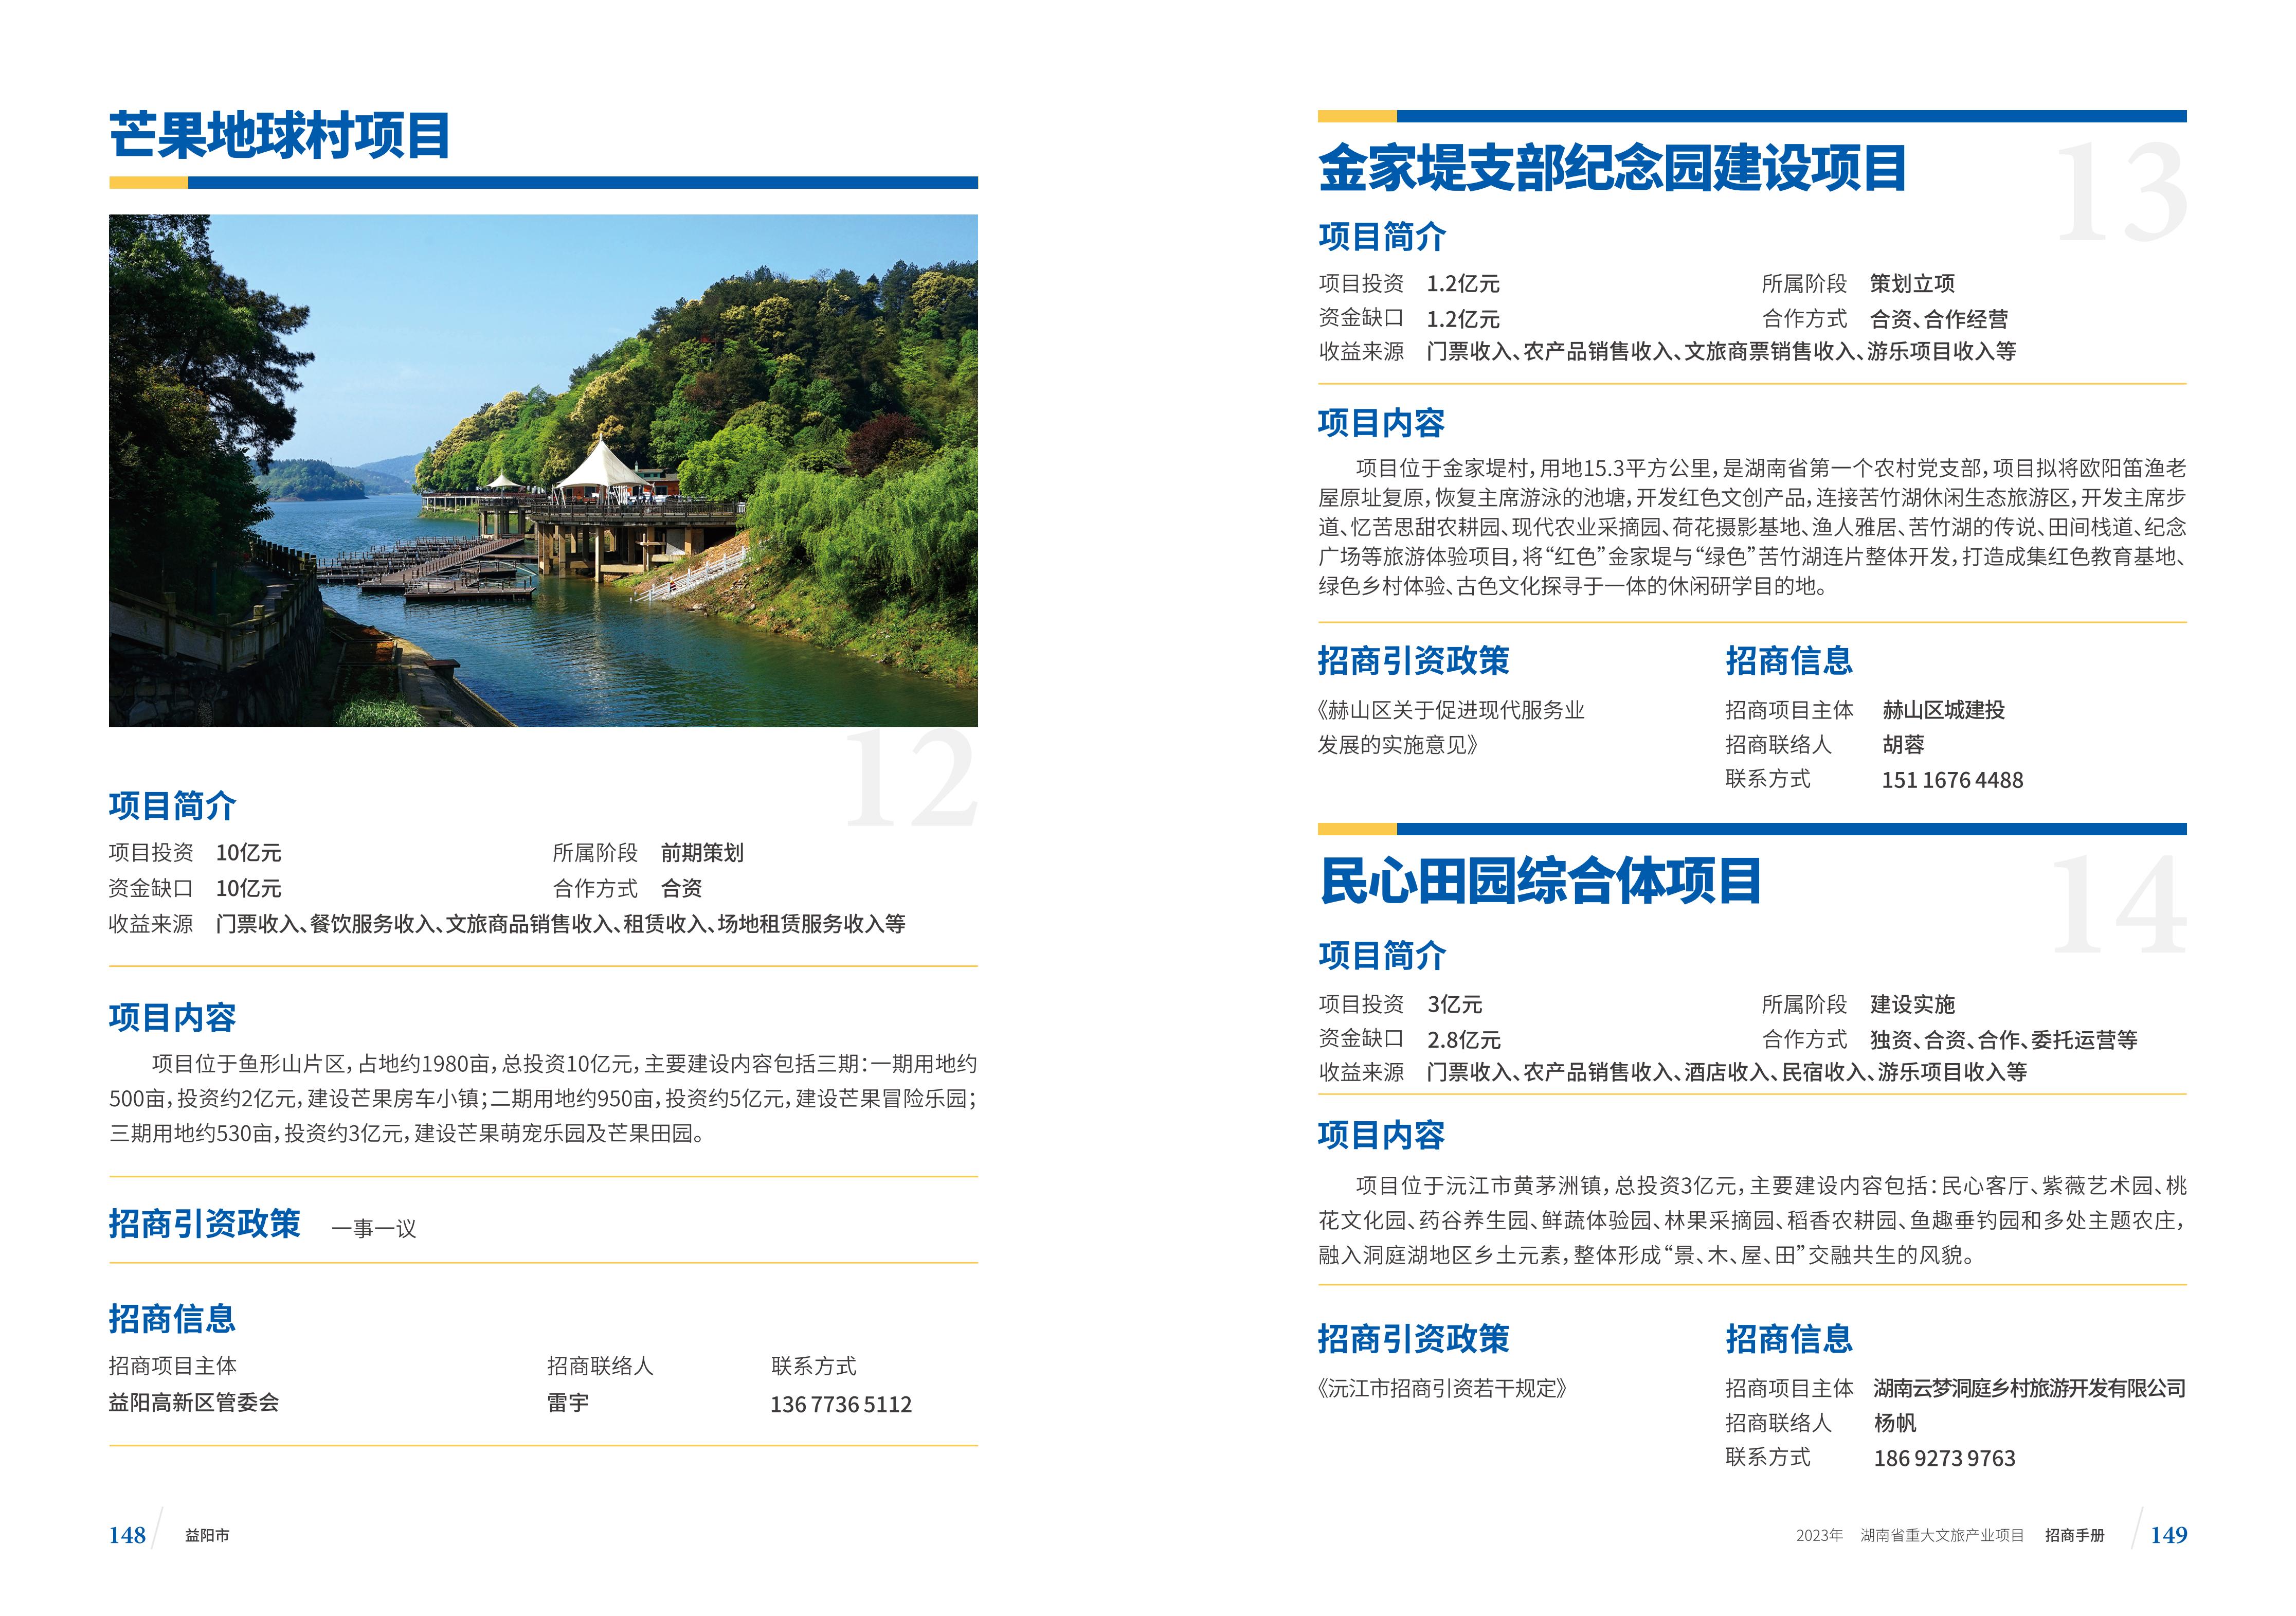 湖南省重大文旅产业项目招手册线上链接版_82.jpg